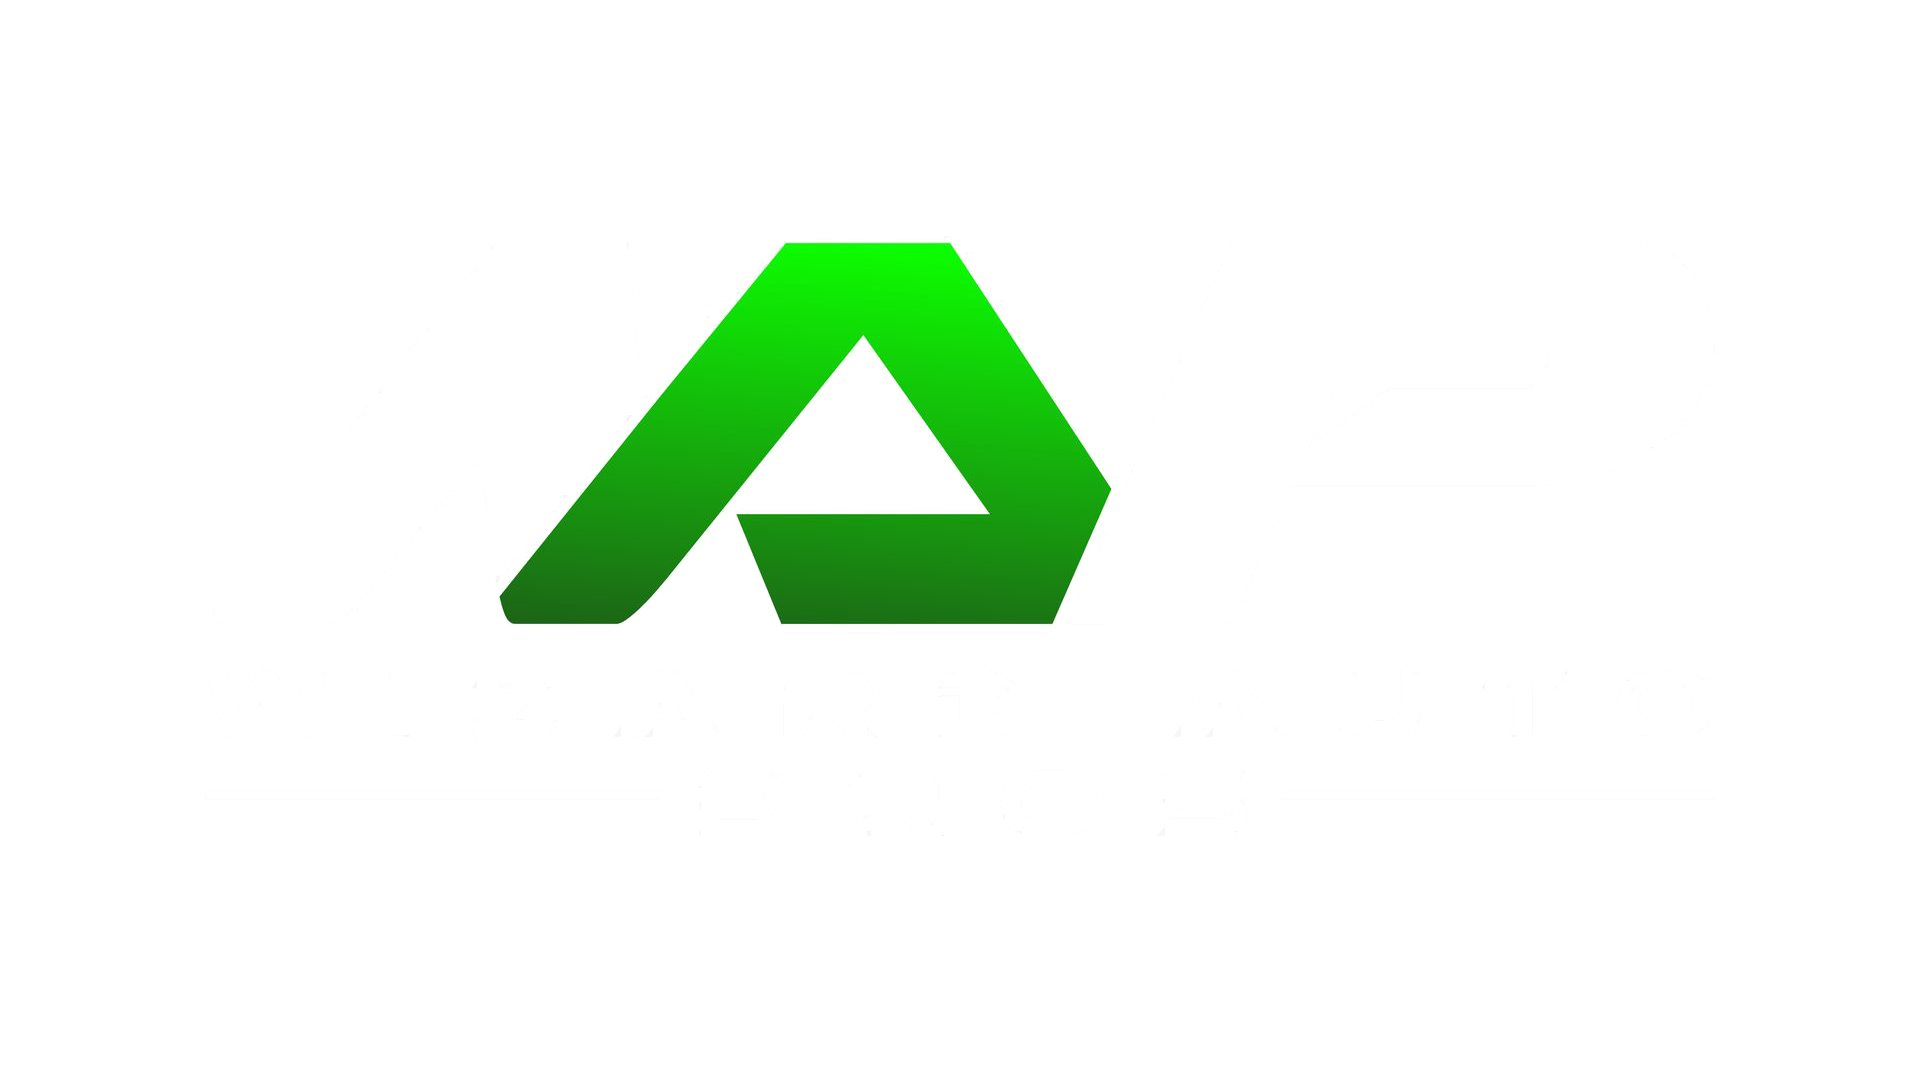 Wizard Auto Pros